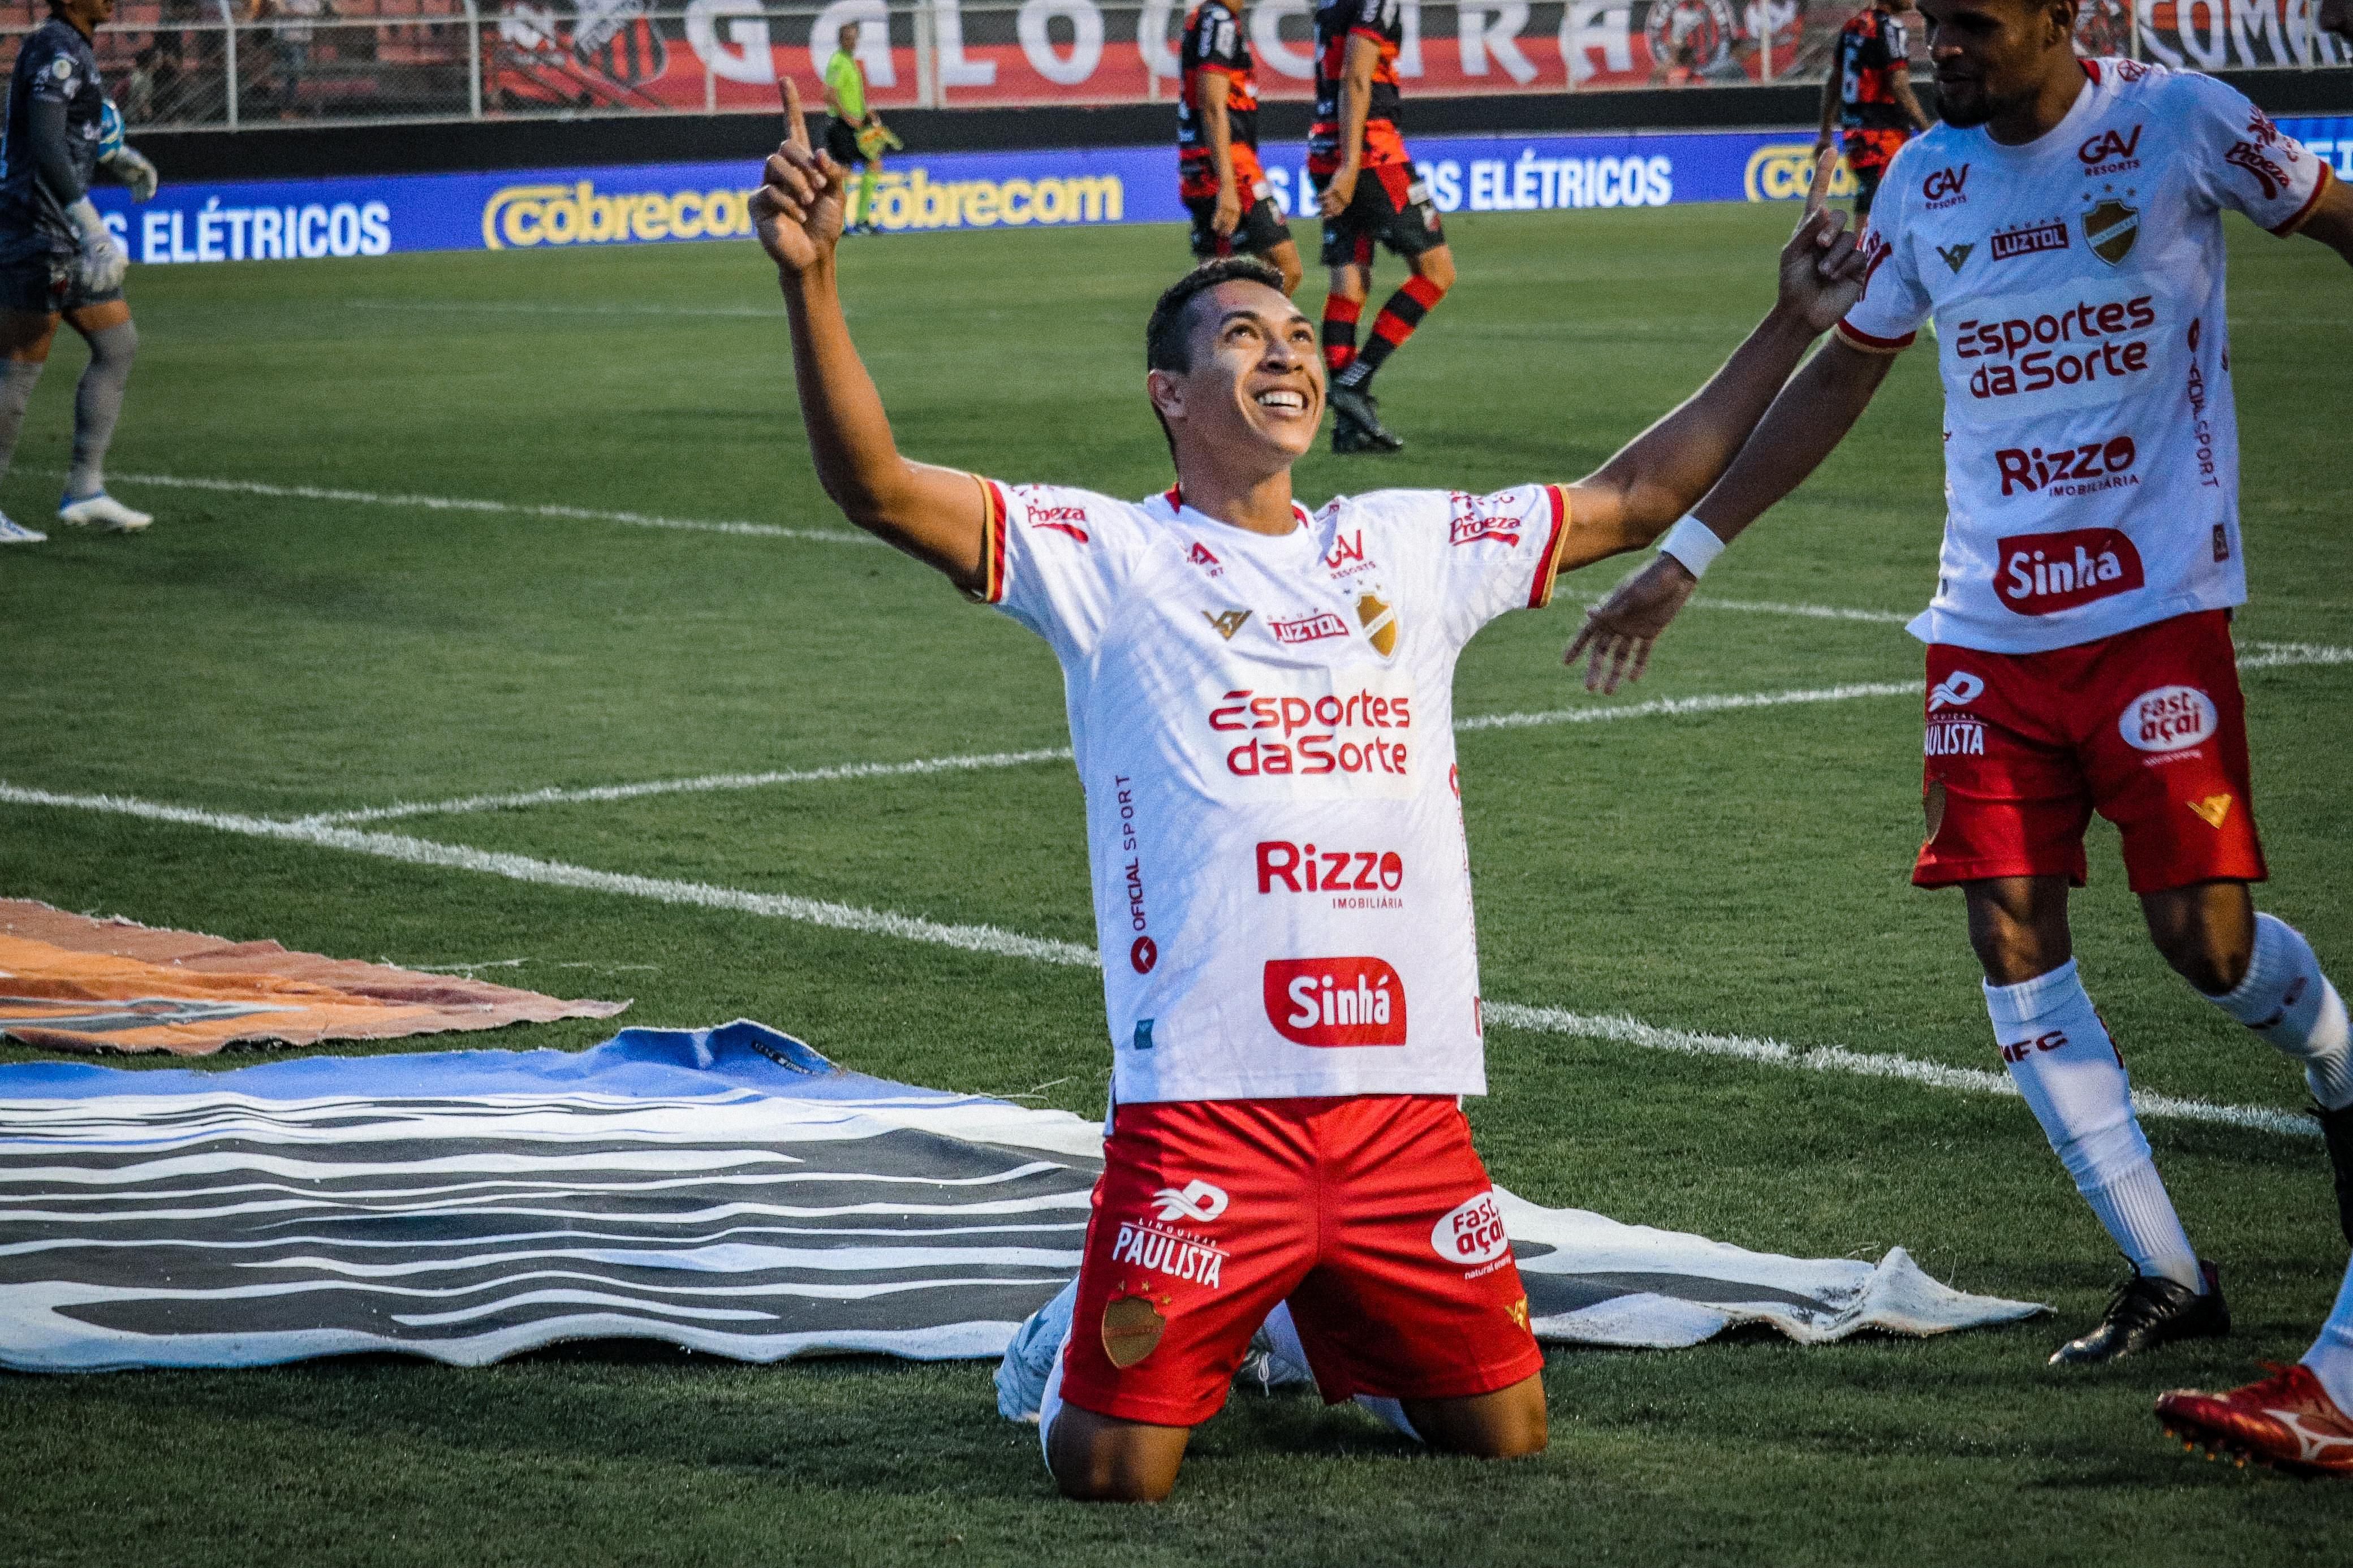 Com dois gols no fim do segundo tempo, Criciúma bate o Marcílio Dias na Copa  Santa